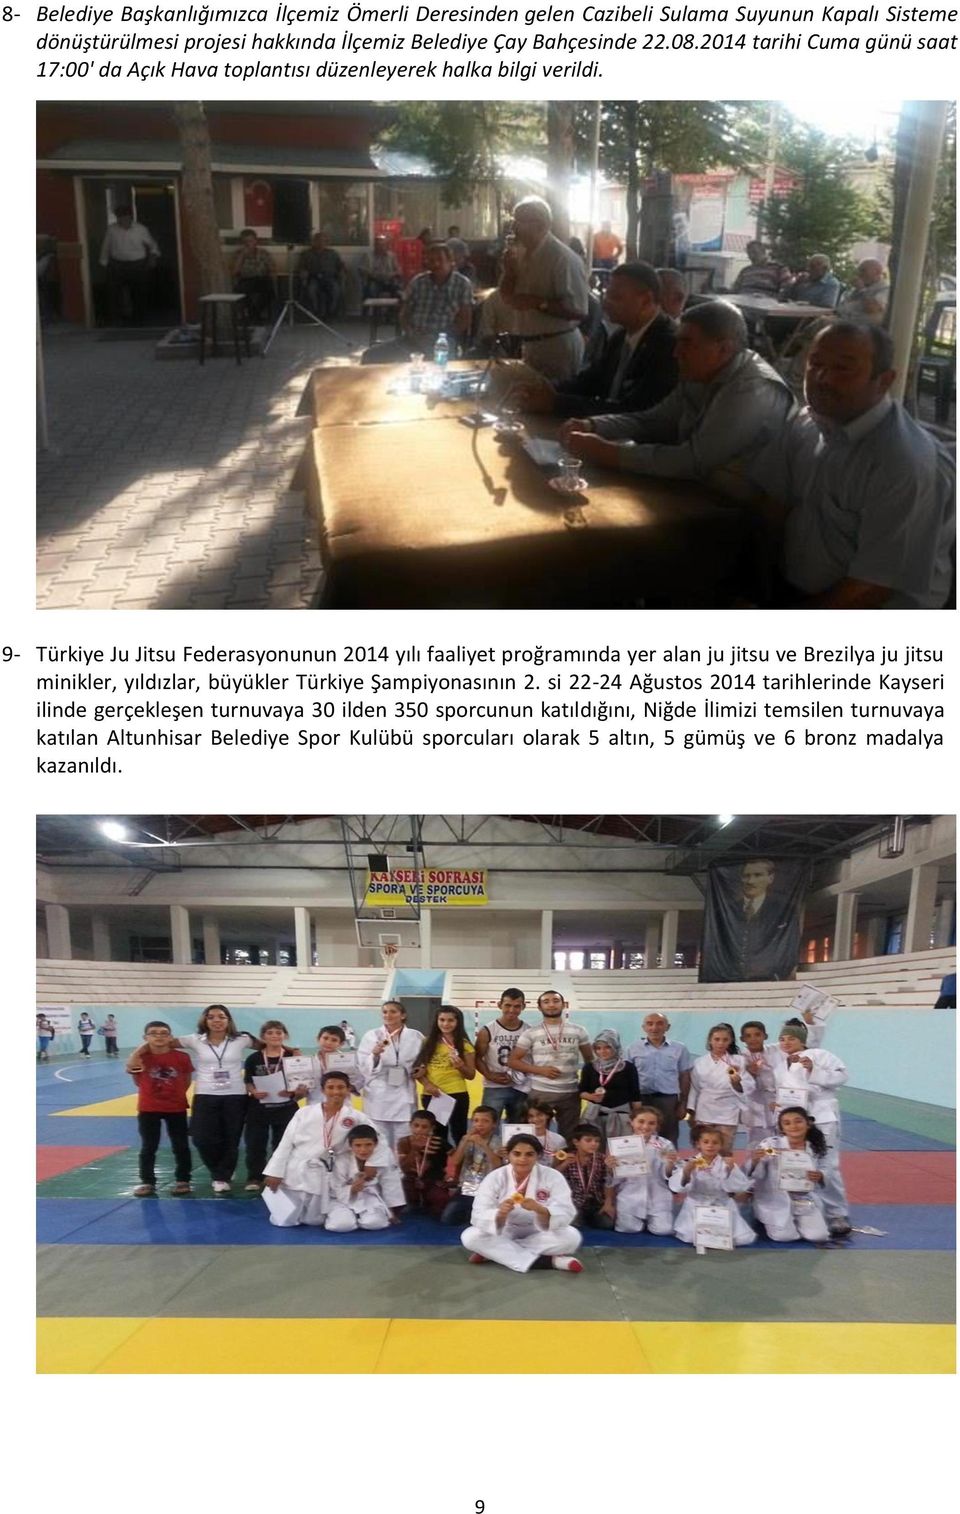 9- Türkiye Ju Jitsu Federasyonunun 2014 yılı faaliyet proğramında yer alan ju jitsu ve Brezilya ju jitsu minikler, yıldızlar, büyükler Türkiye Şampiyonasının 2.